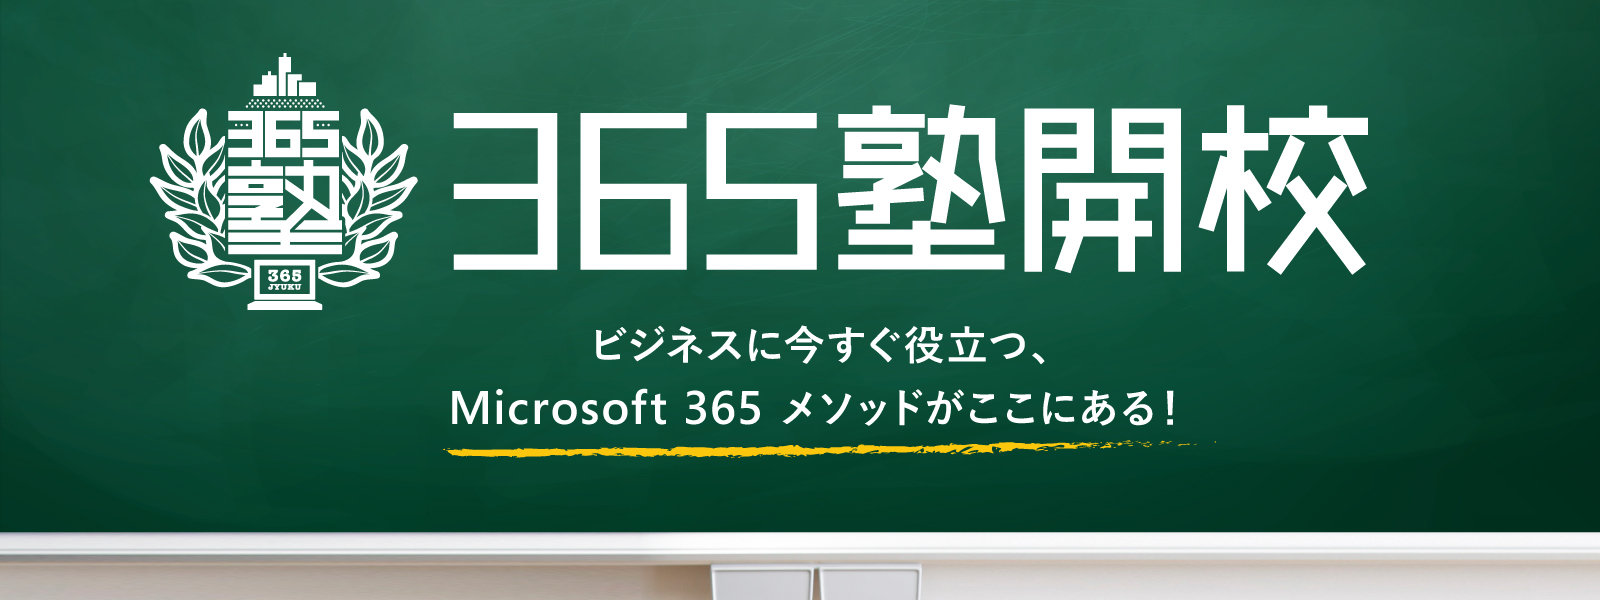 365 塾開校 ビジネスに今すぐ役立つ、Microsoft 365 メソッドがここにある!